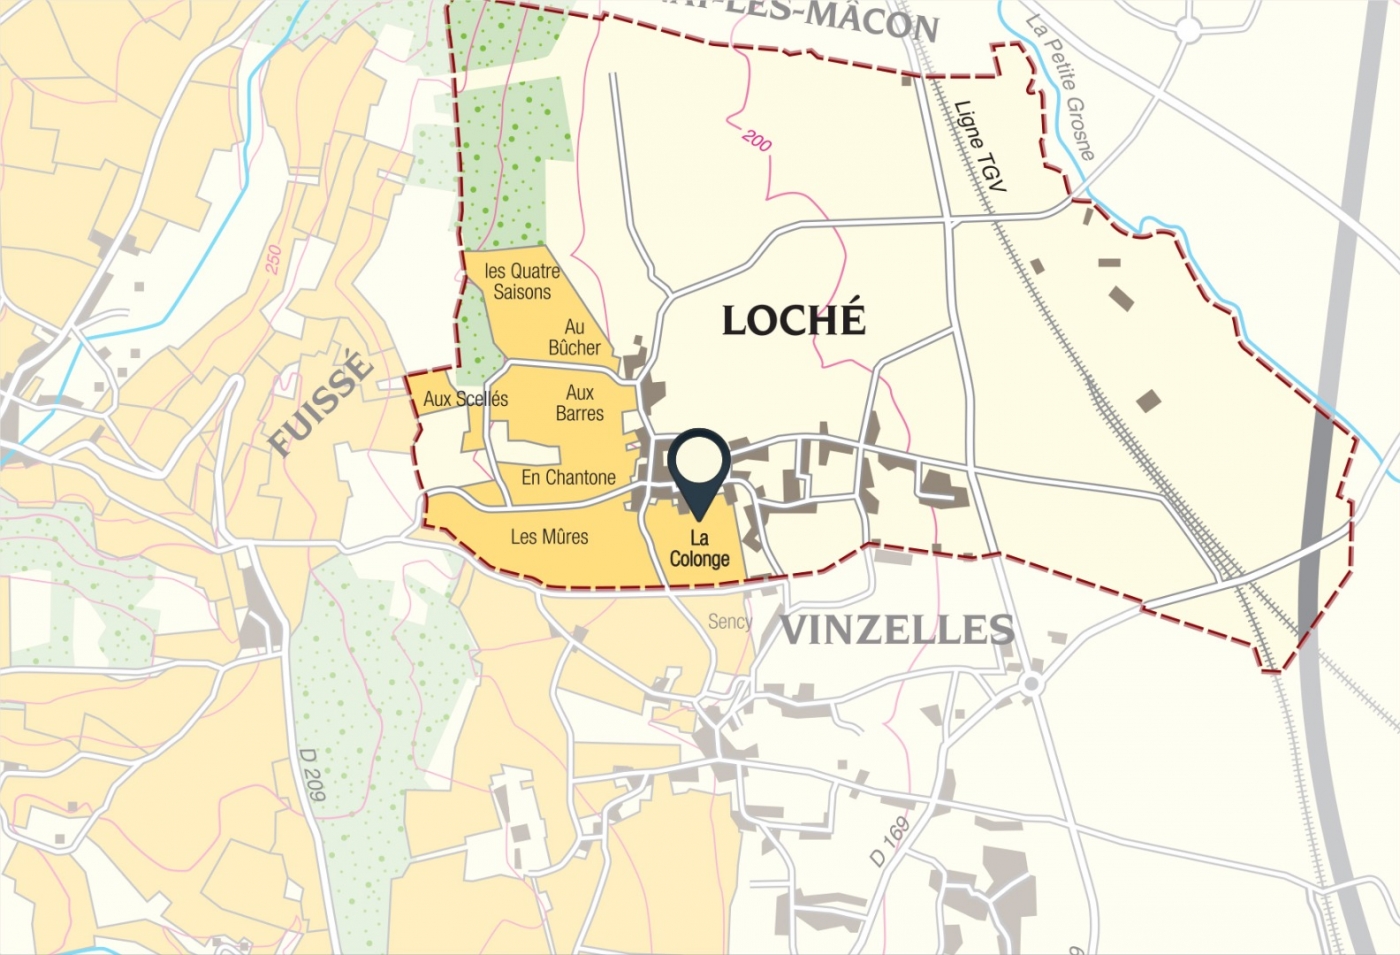 Map of vine plots - Pouilly-Loché Climate « La Colonge » Bret Brothers